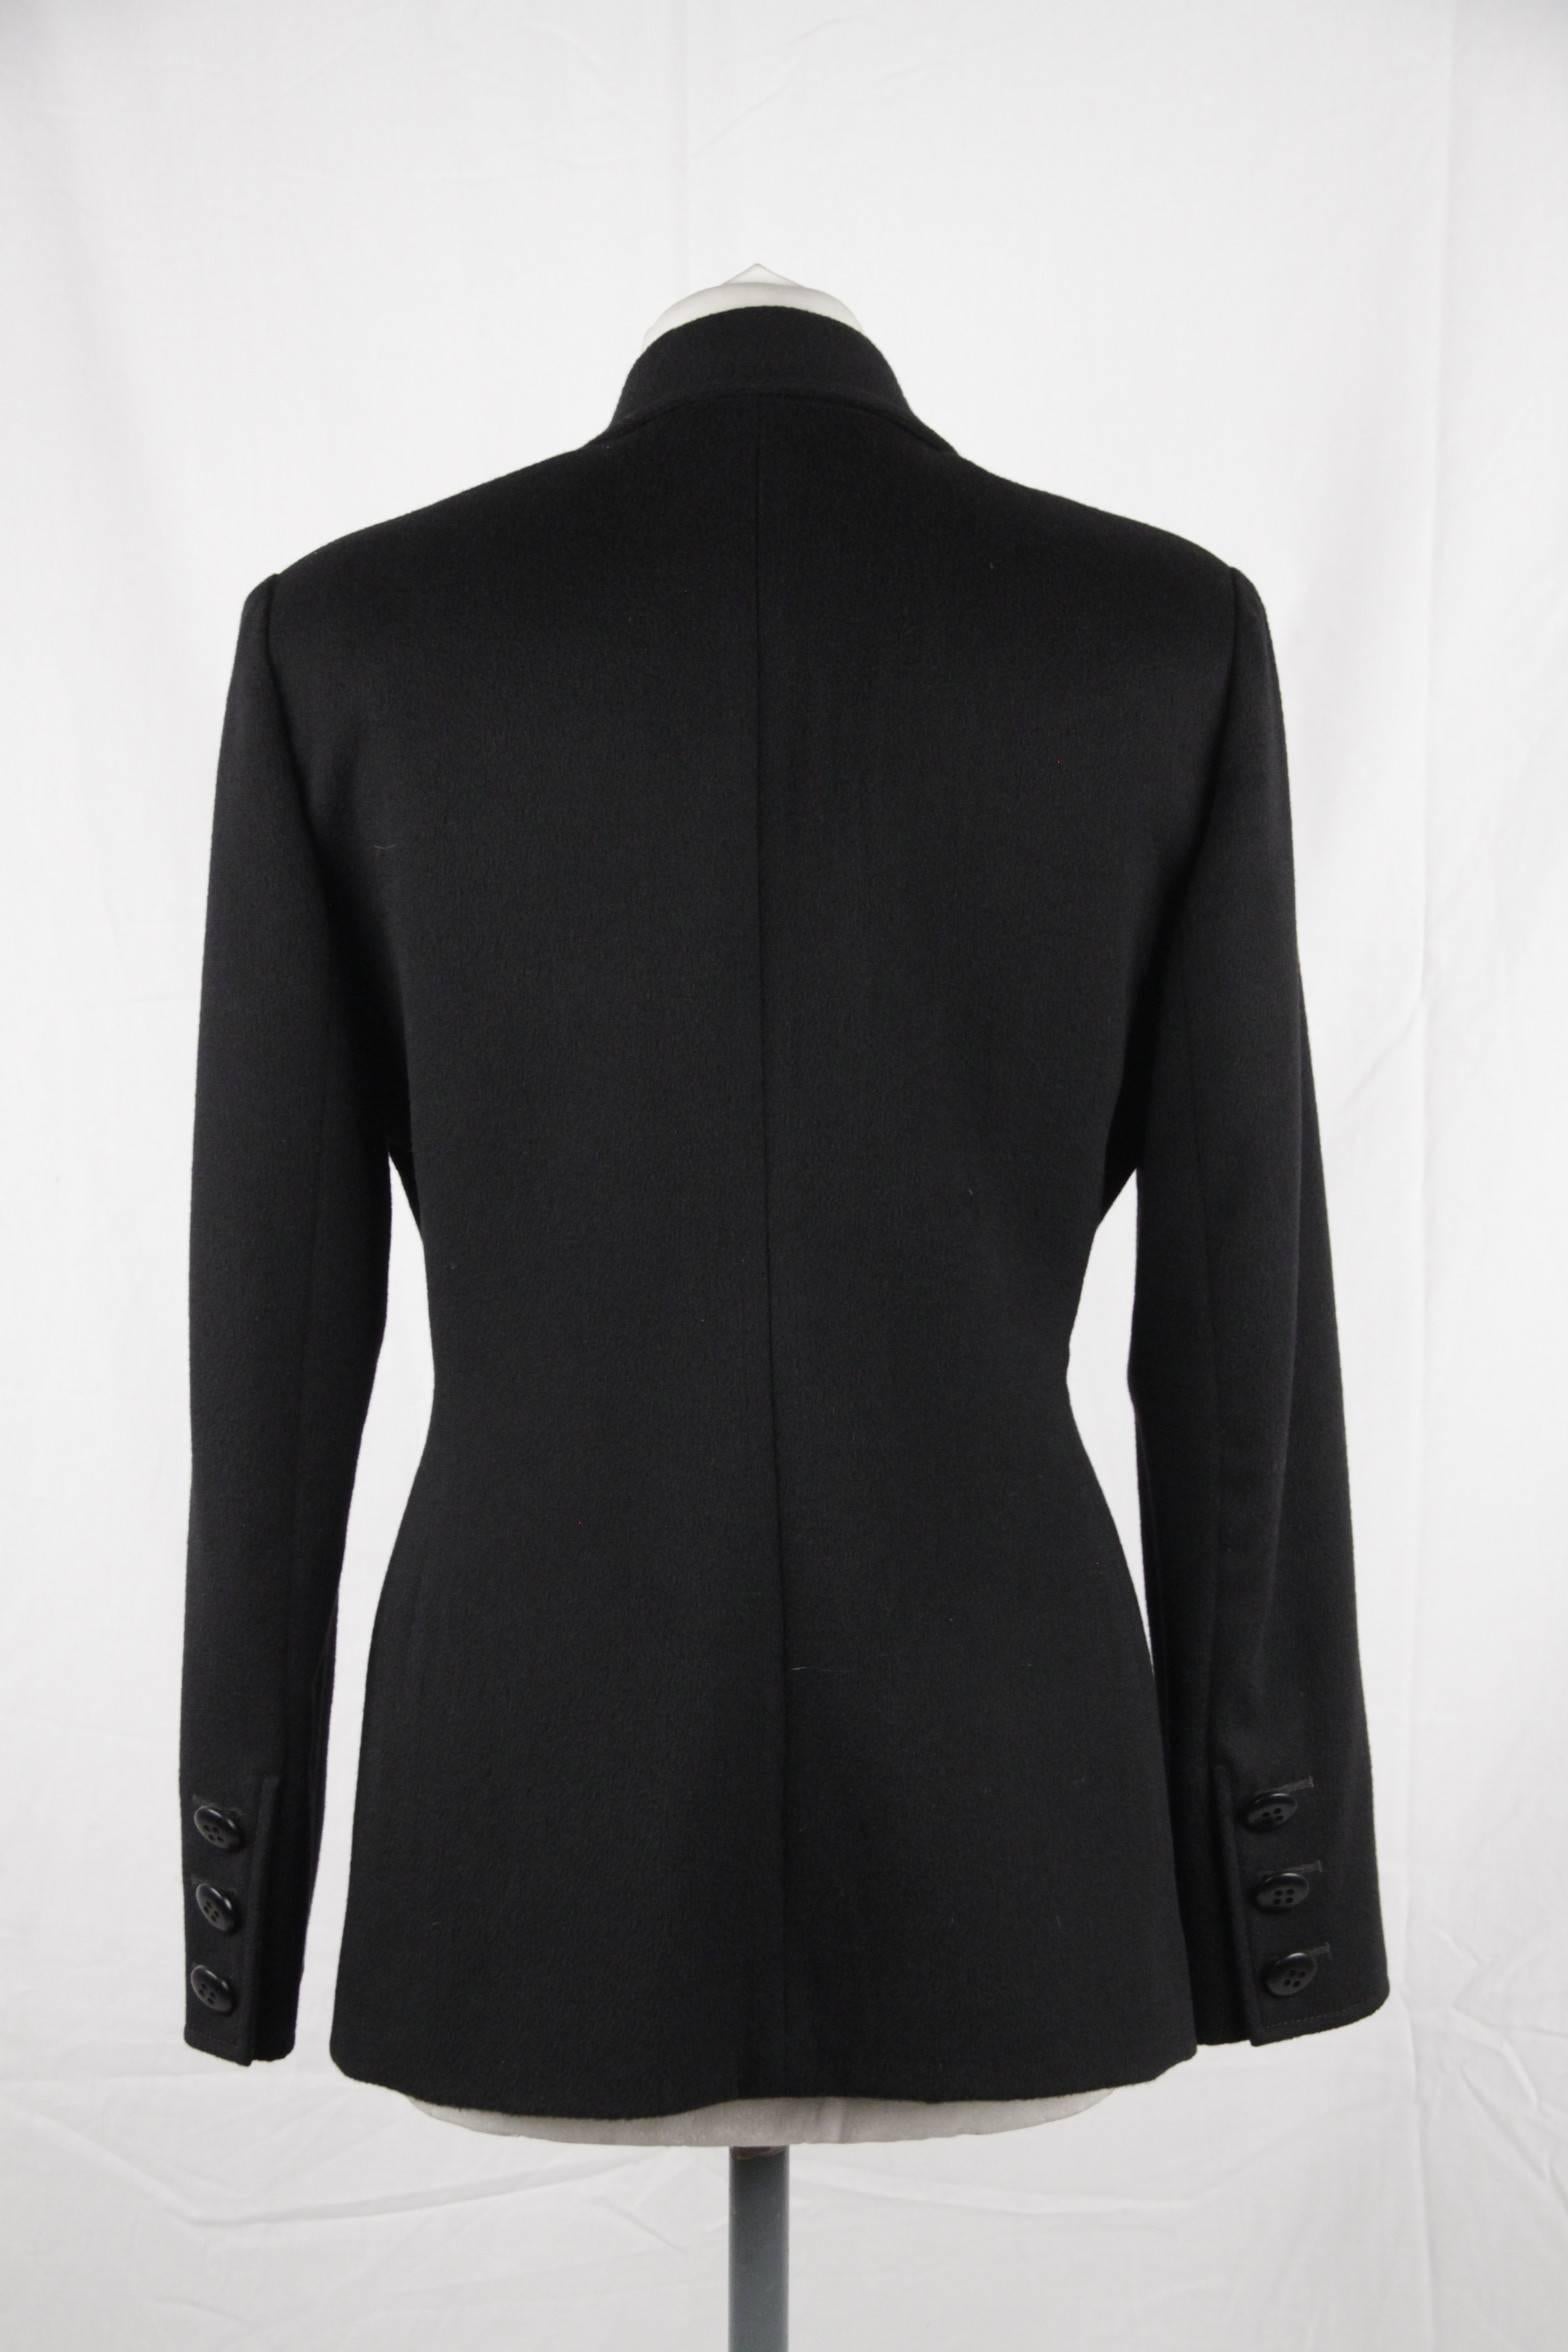 VALENTINO BOUTIQUE Vintage Black Wool BLAZER Jacket SIZE 6 GT 1